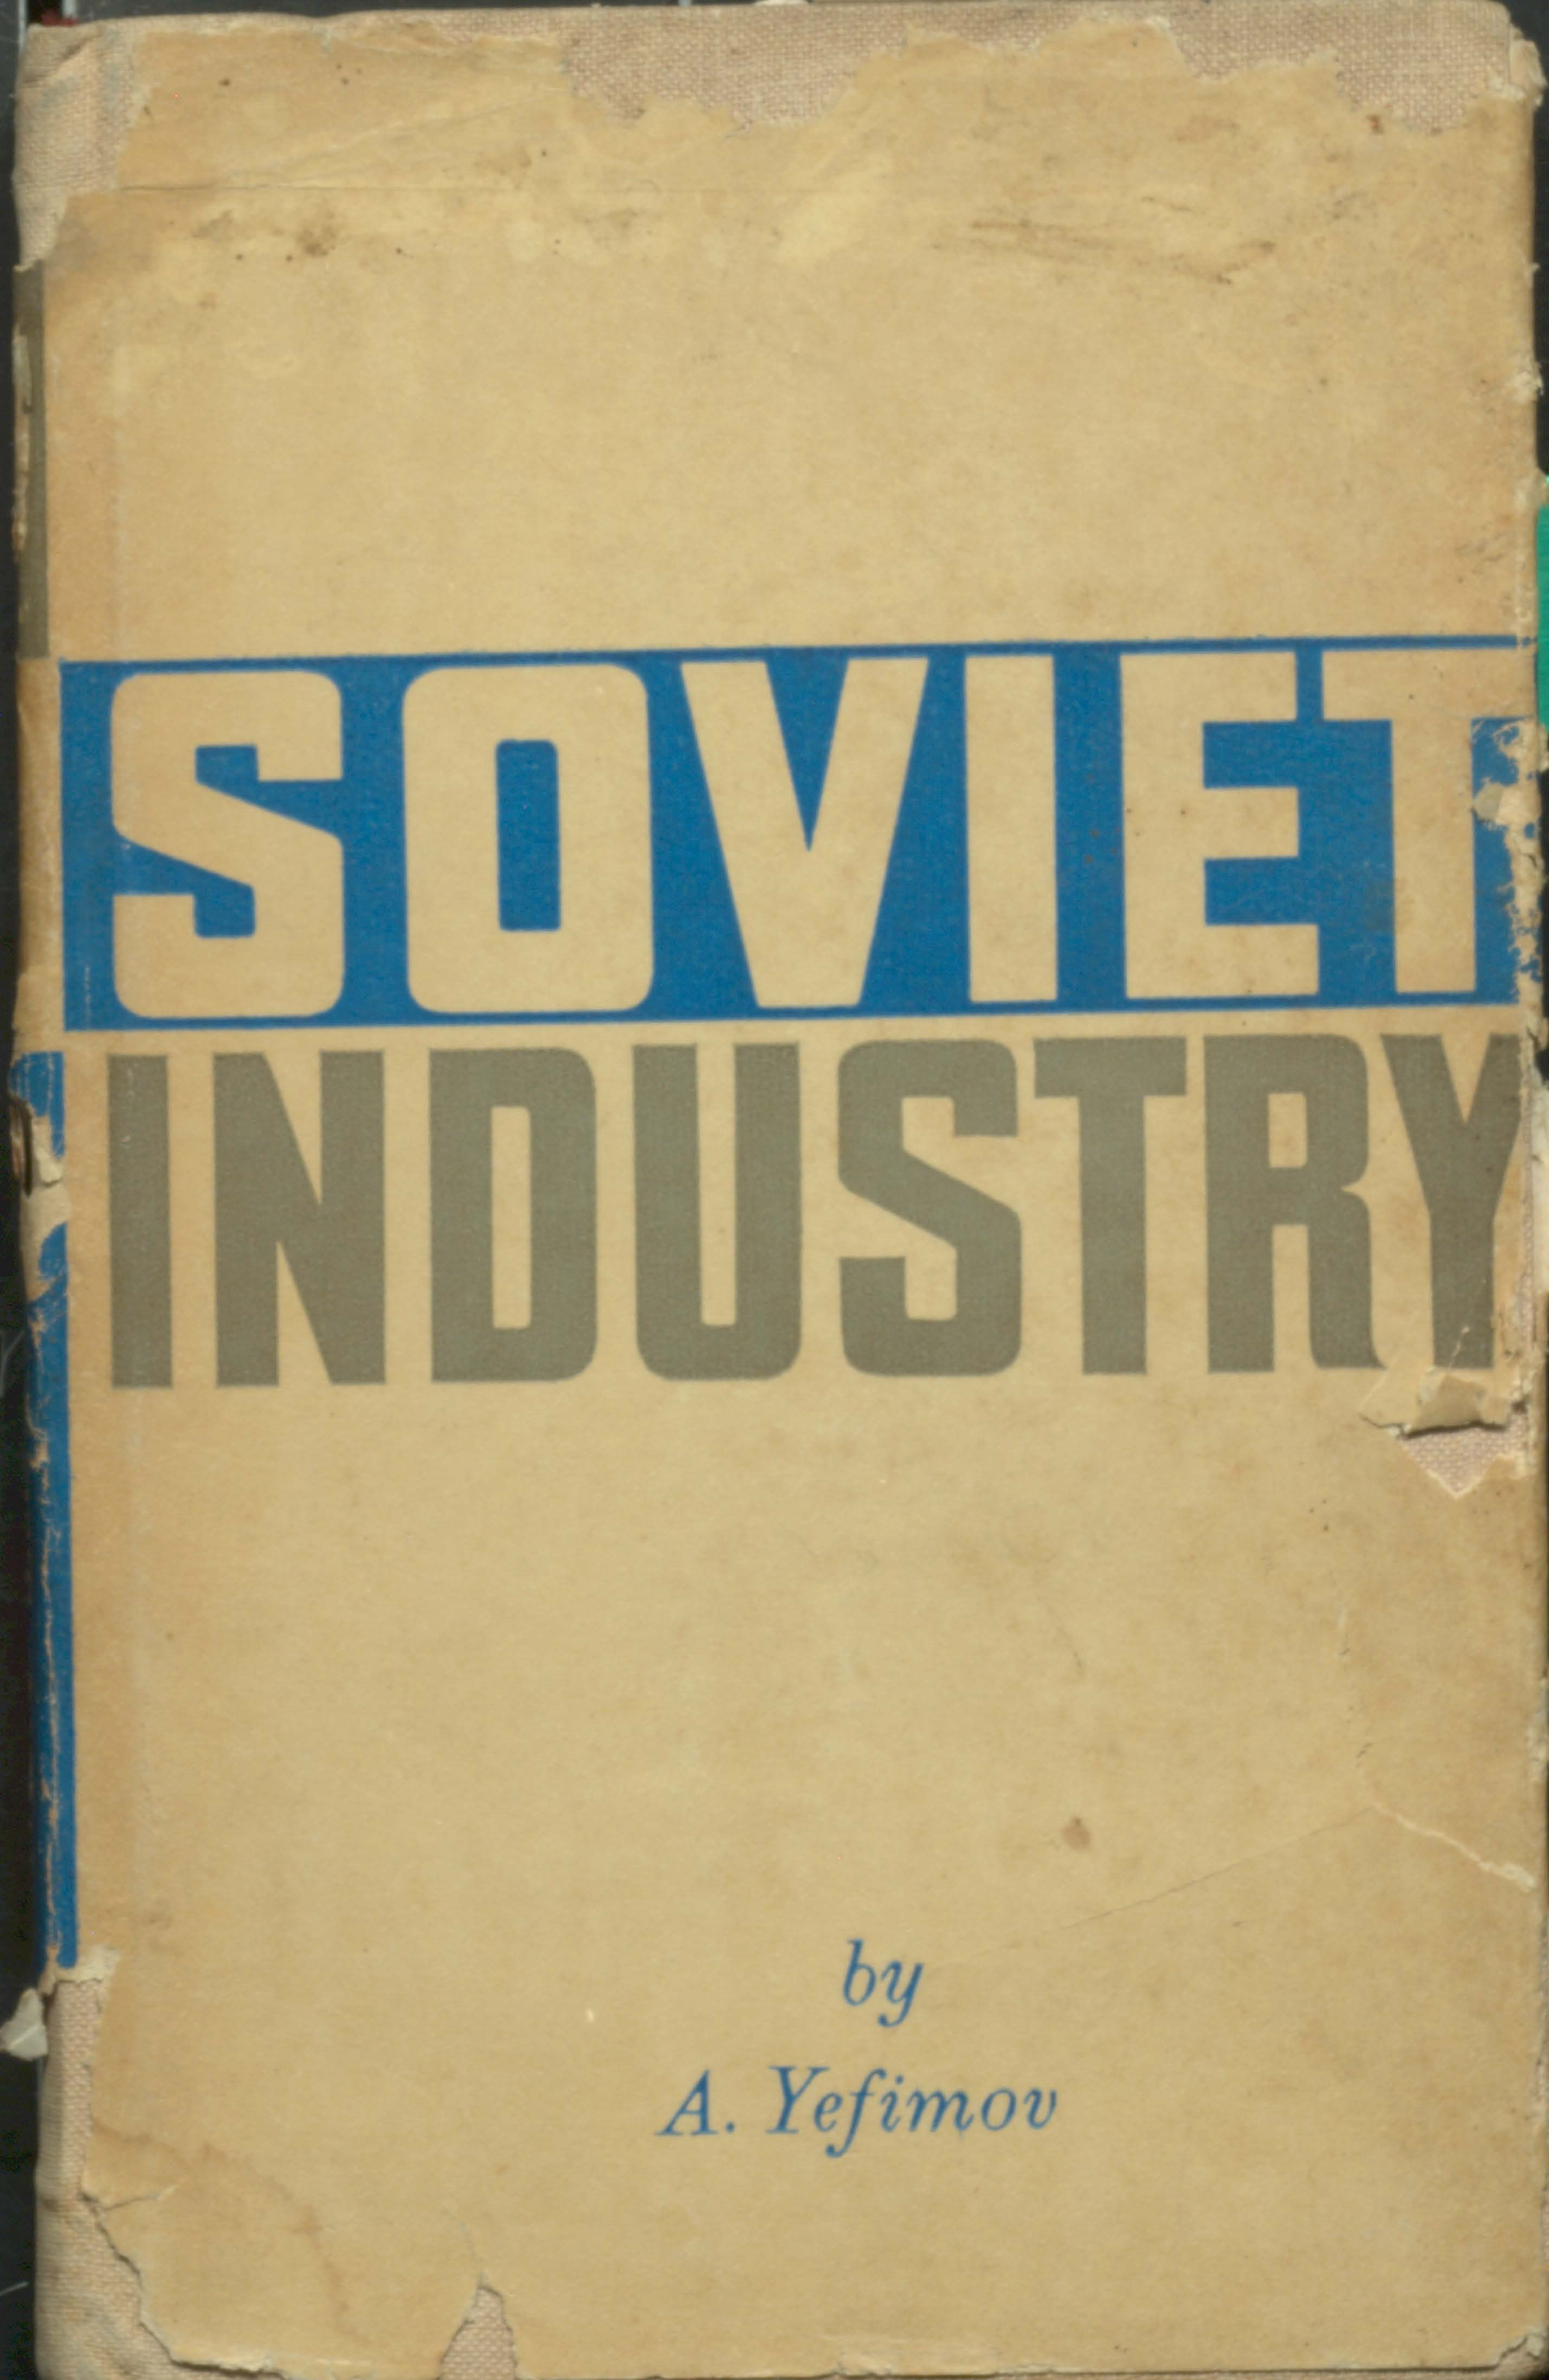 Soviet Industry